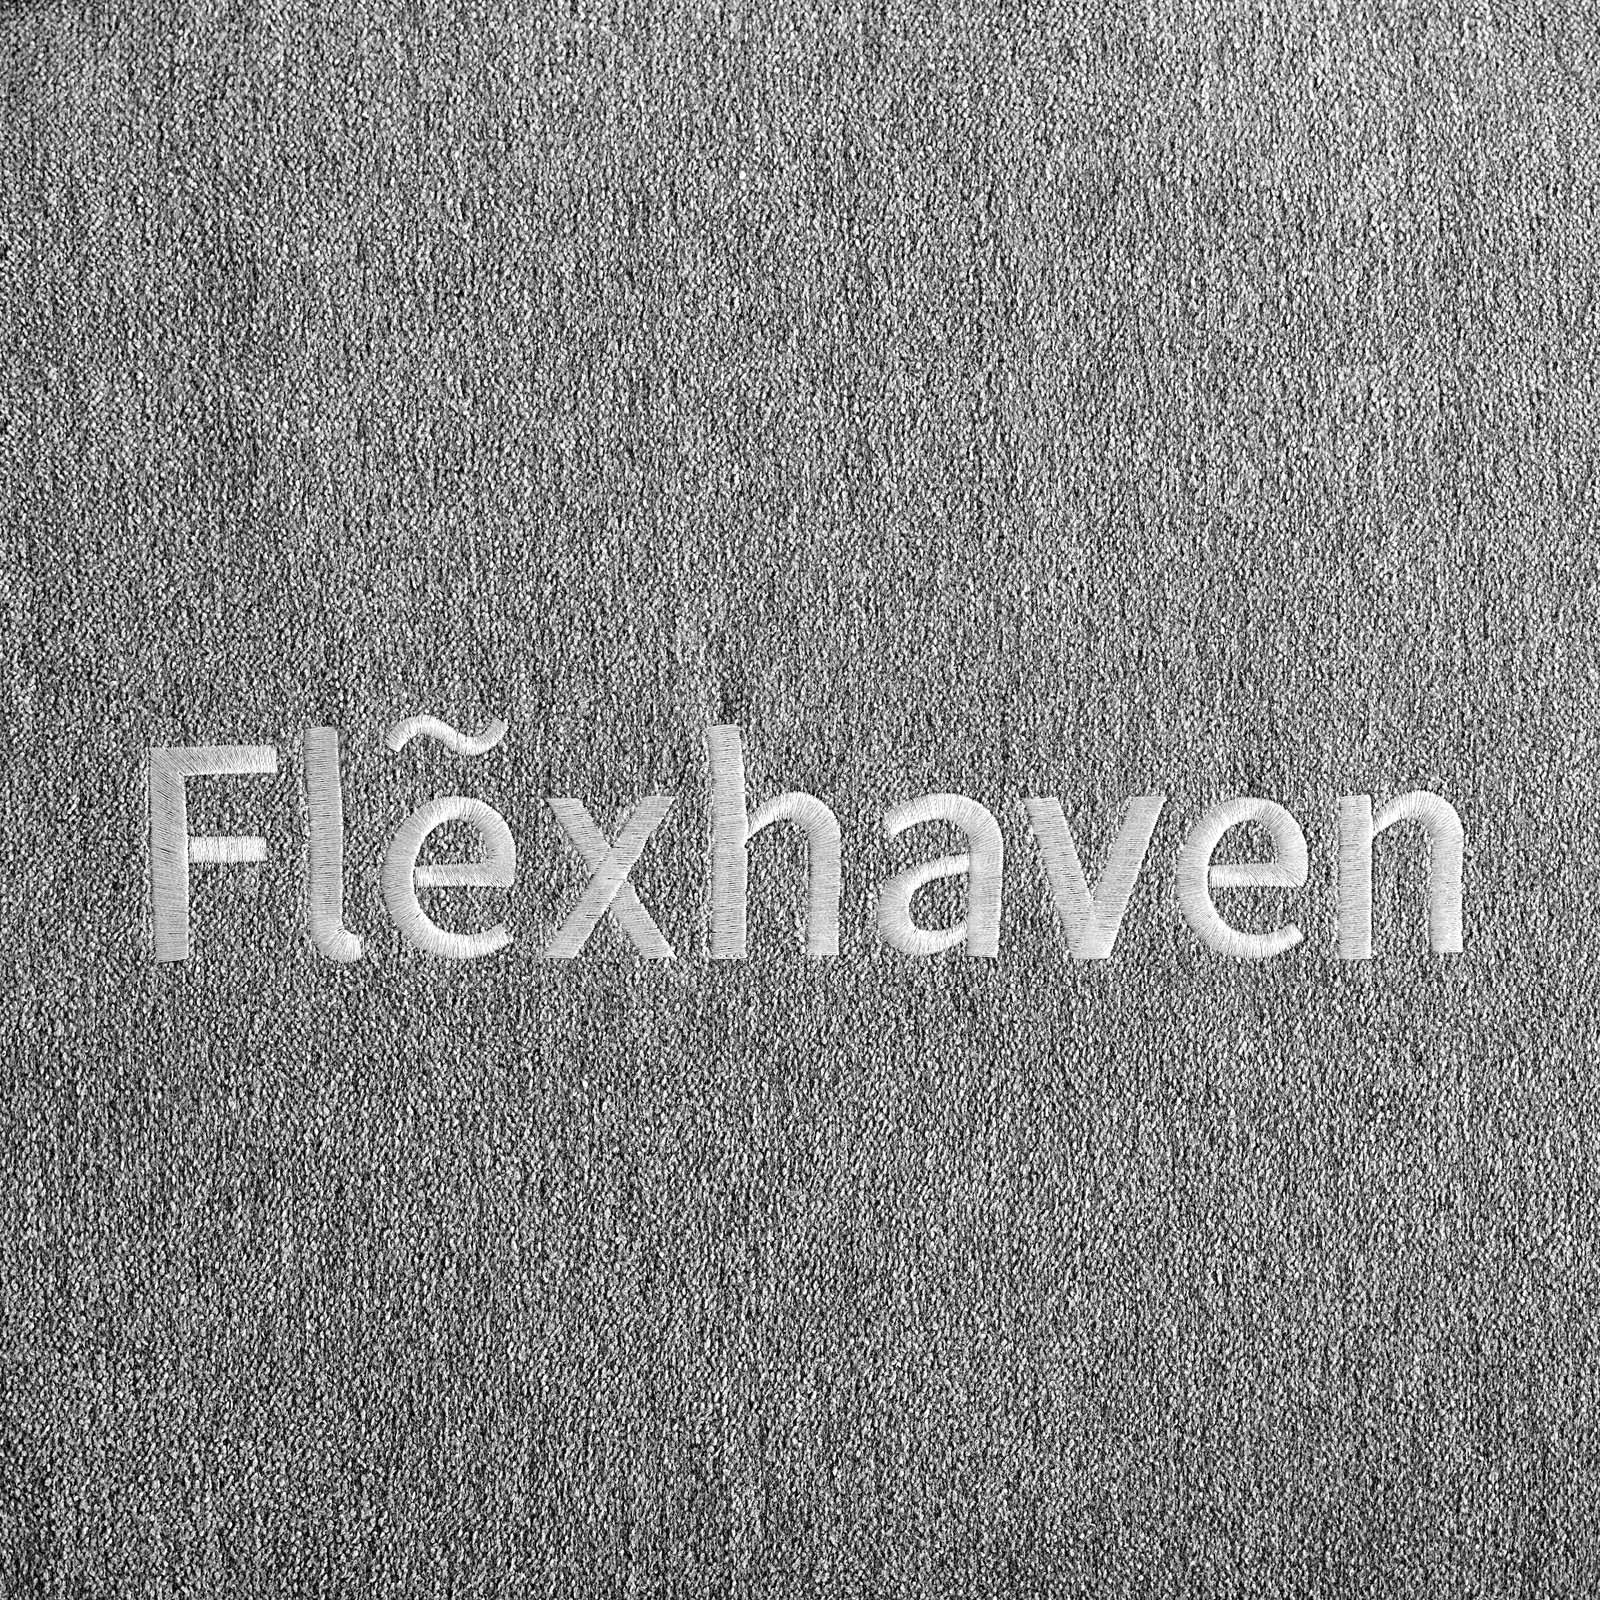 Modway Mattresses - Flexhaven 10" Memory Queen Mattress